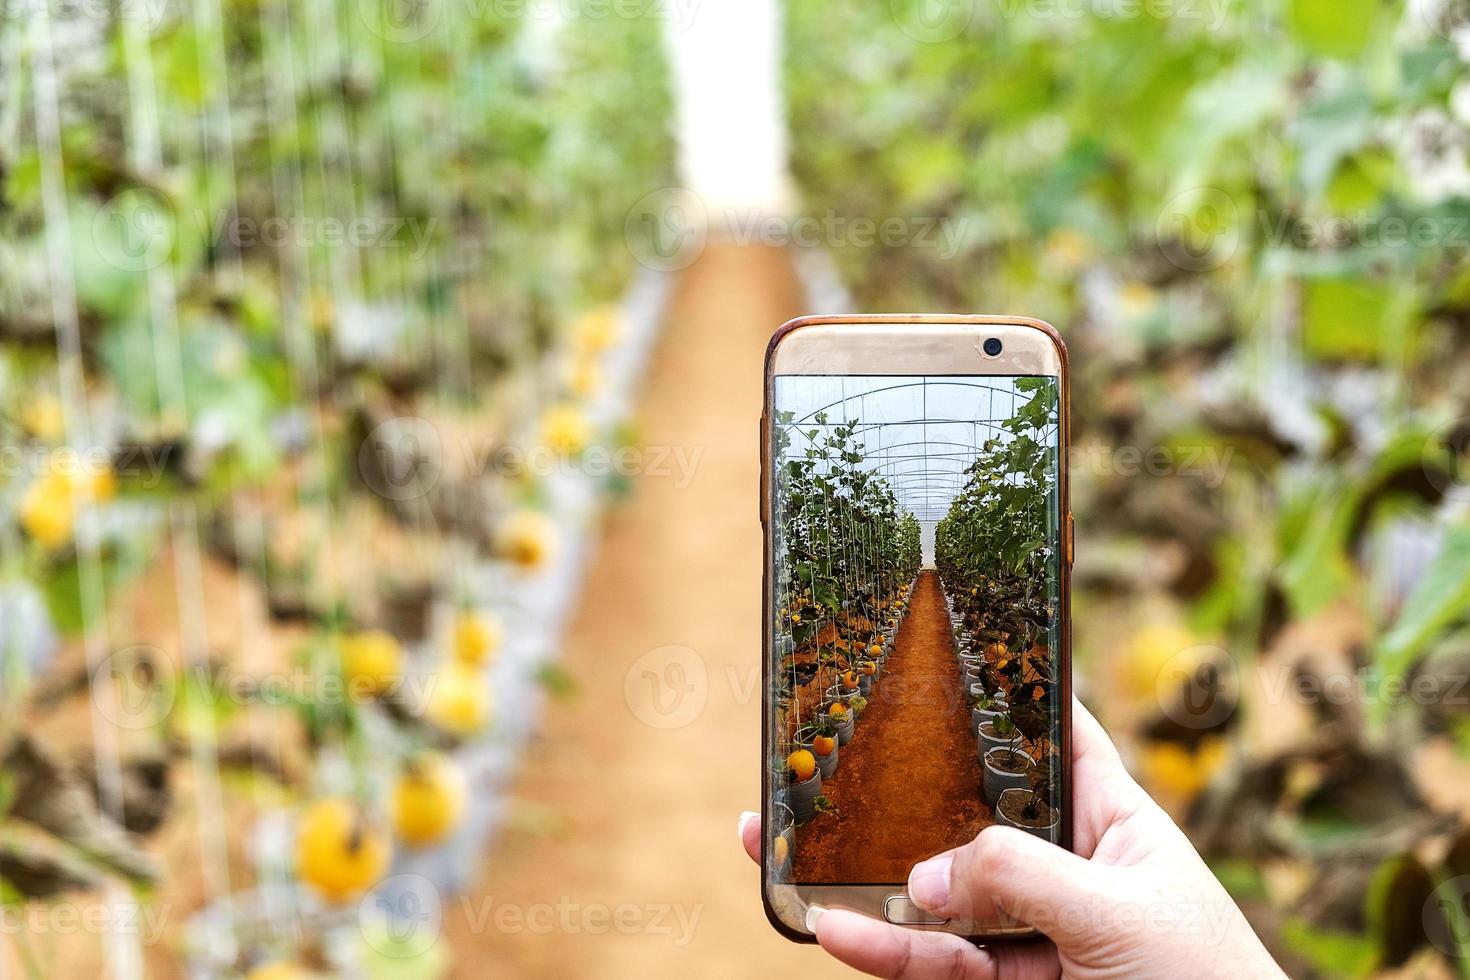 agricoltore che osserva una fotografia di melone archiviata nel cellulare foto